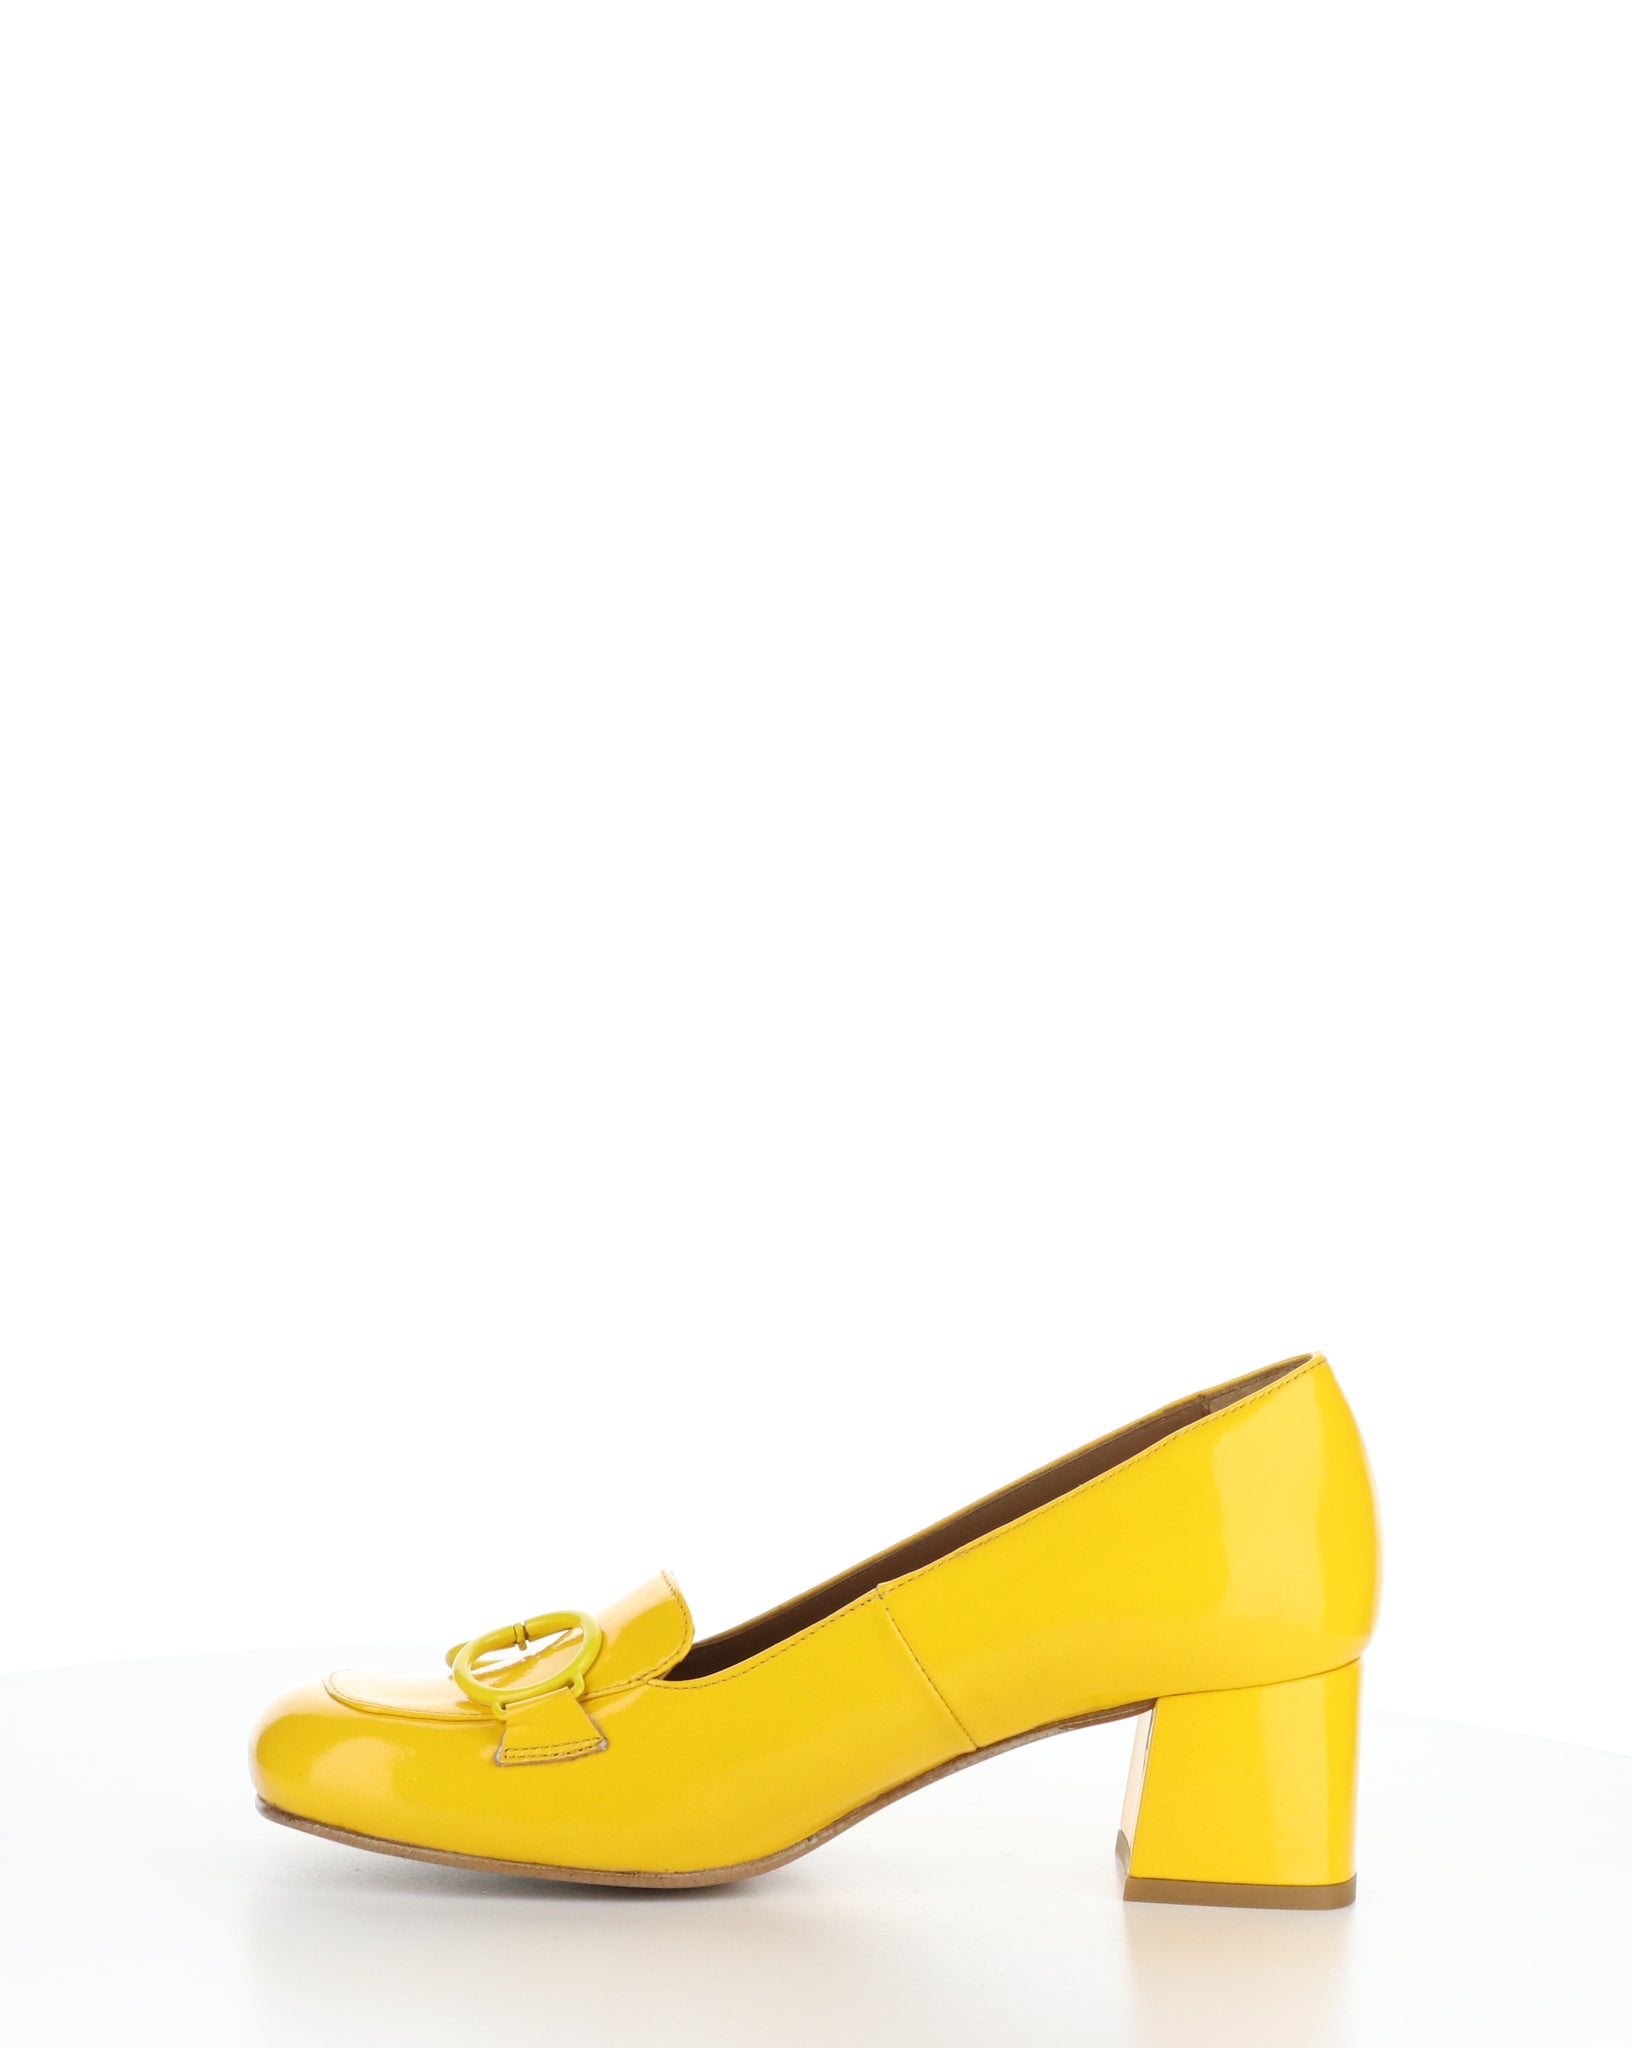 Fly London "Sivi" Yellow patent dress shoe